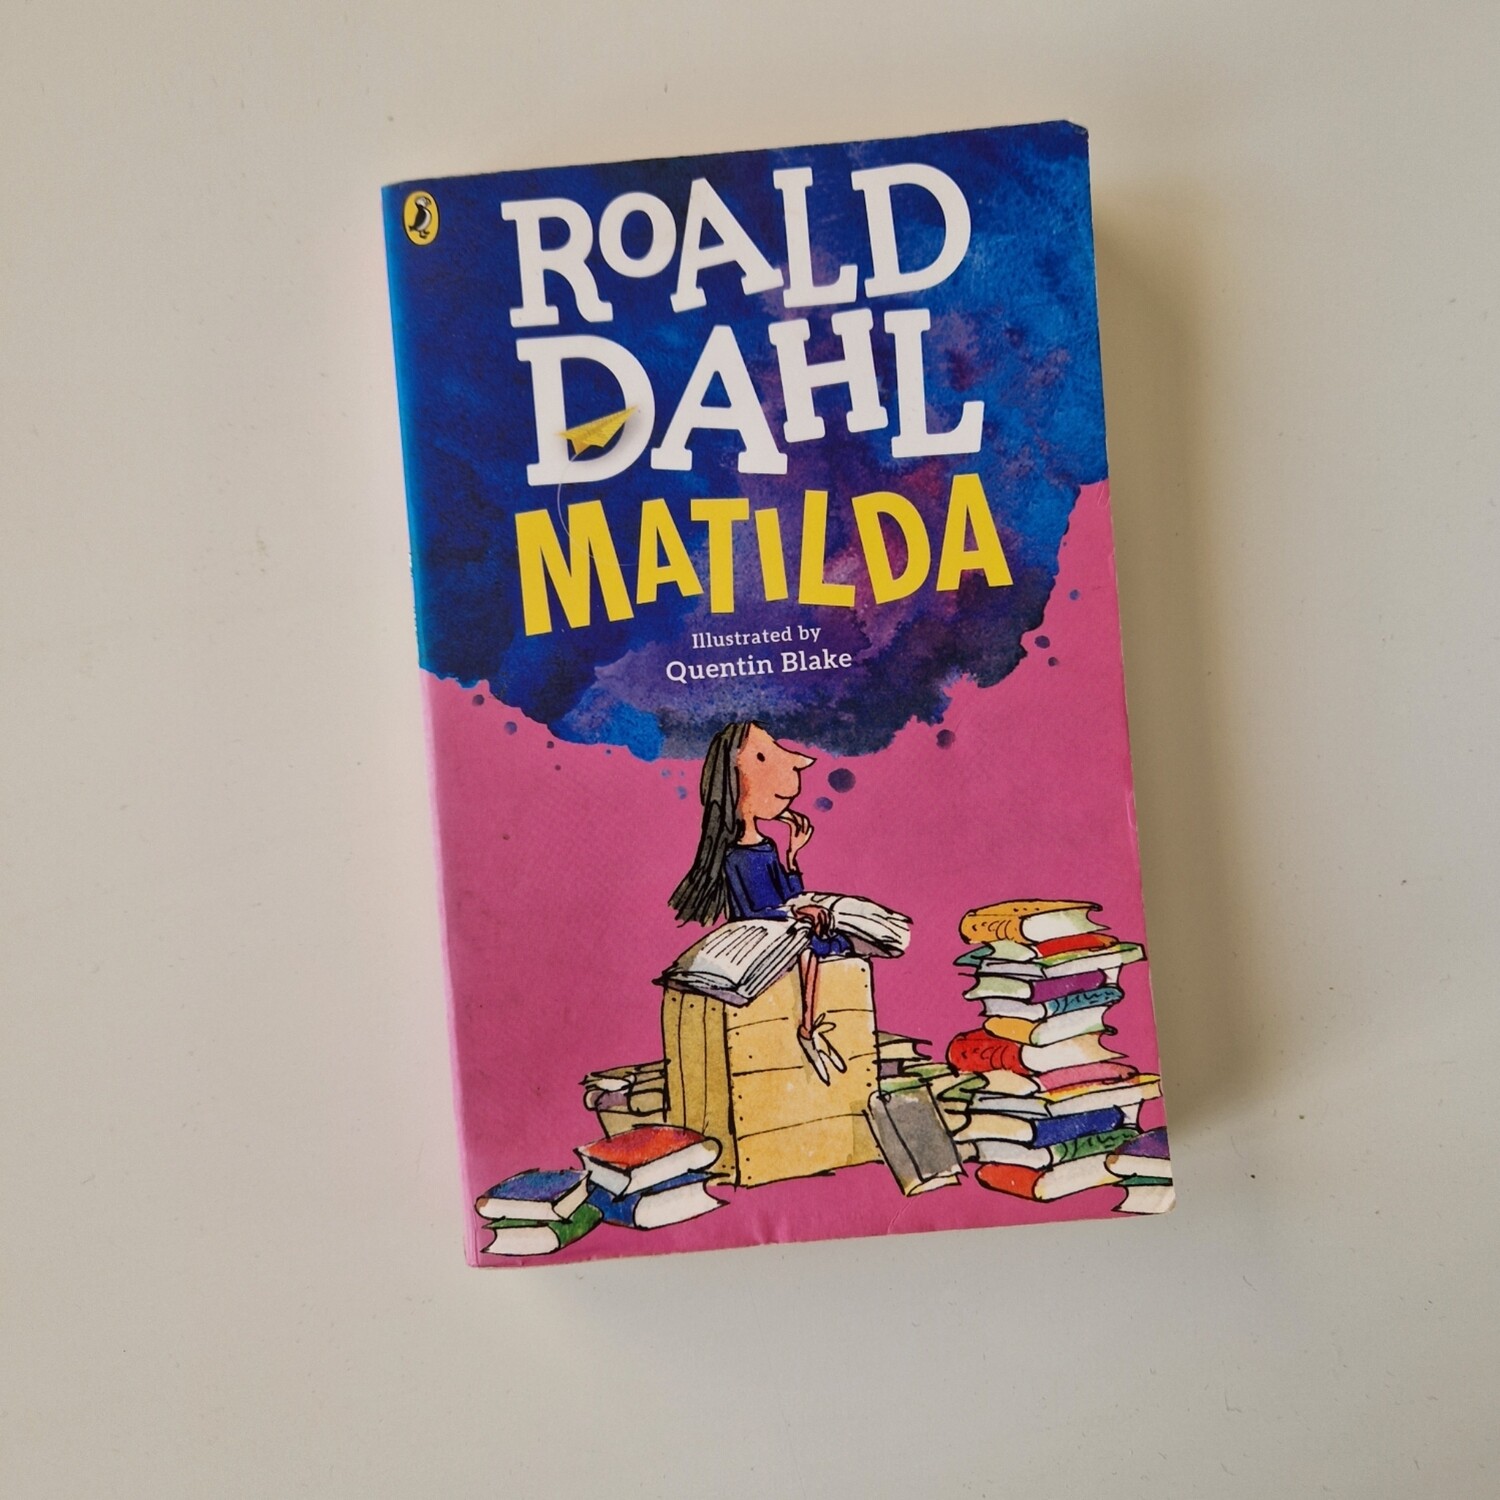 Matilda Roald Dahl Notebook - made from a paperback book